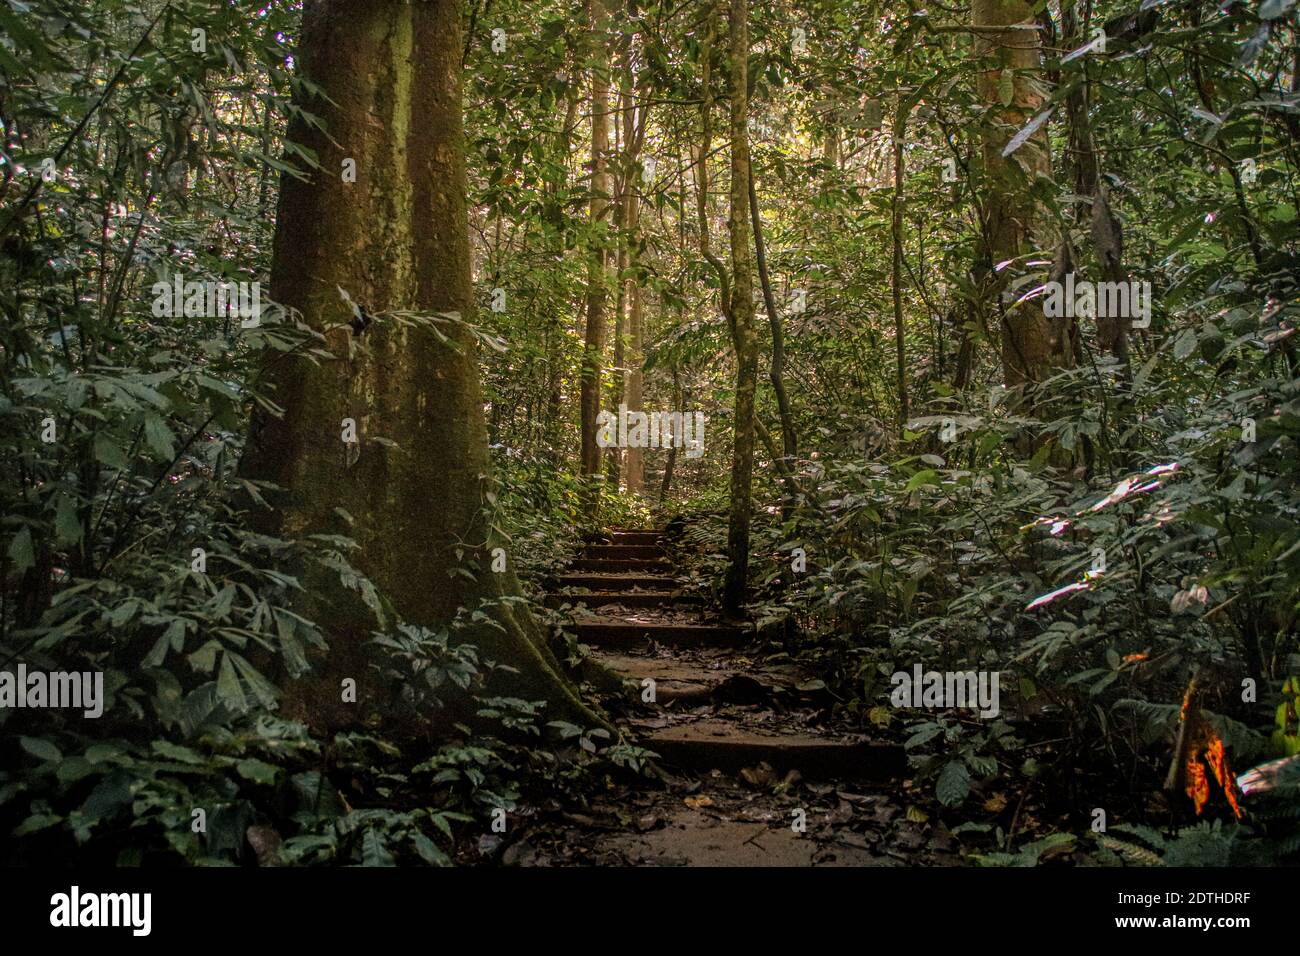 Forêt luxuriante et épaisse dans le parc national de CUC Phoung à Ninh Binh, Vietnam Banque D'Images